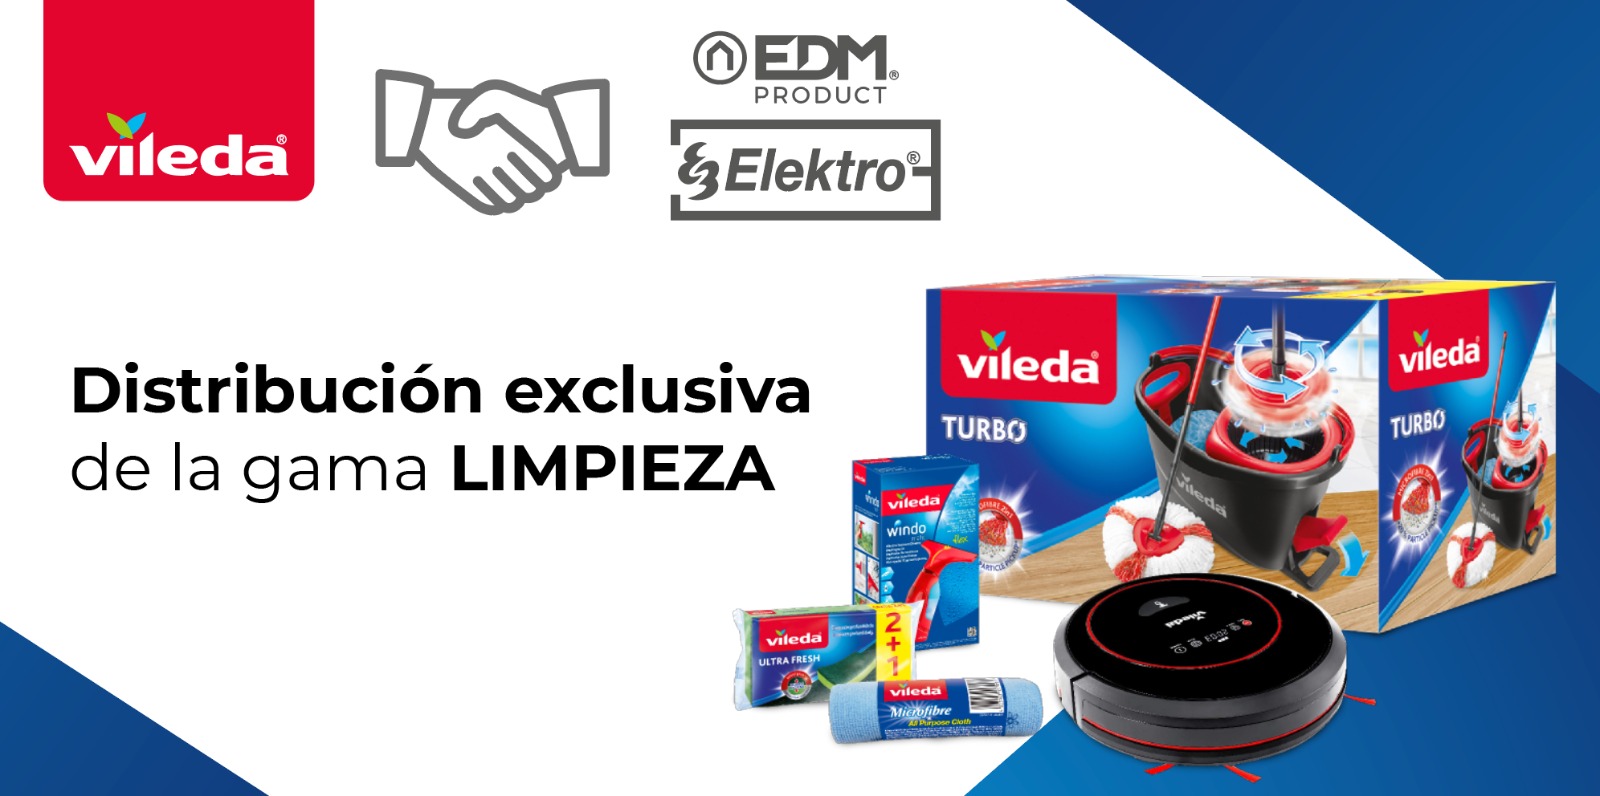 Elektro3-EDM únic distribuïdor exclusiu de Vileda pel canal de ferreteria i bricolatge